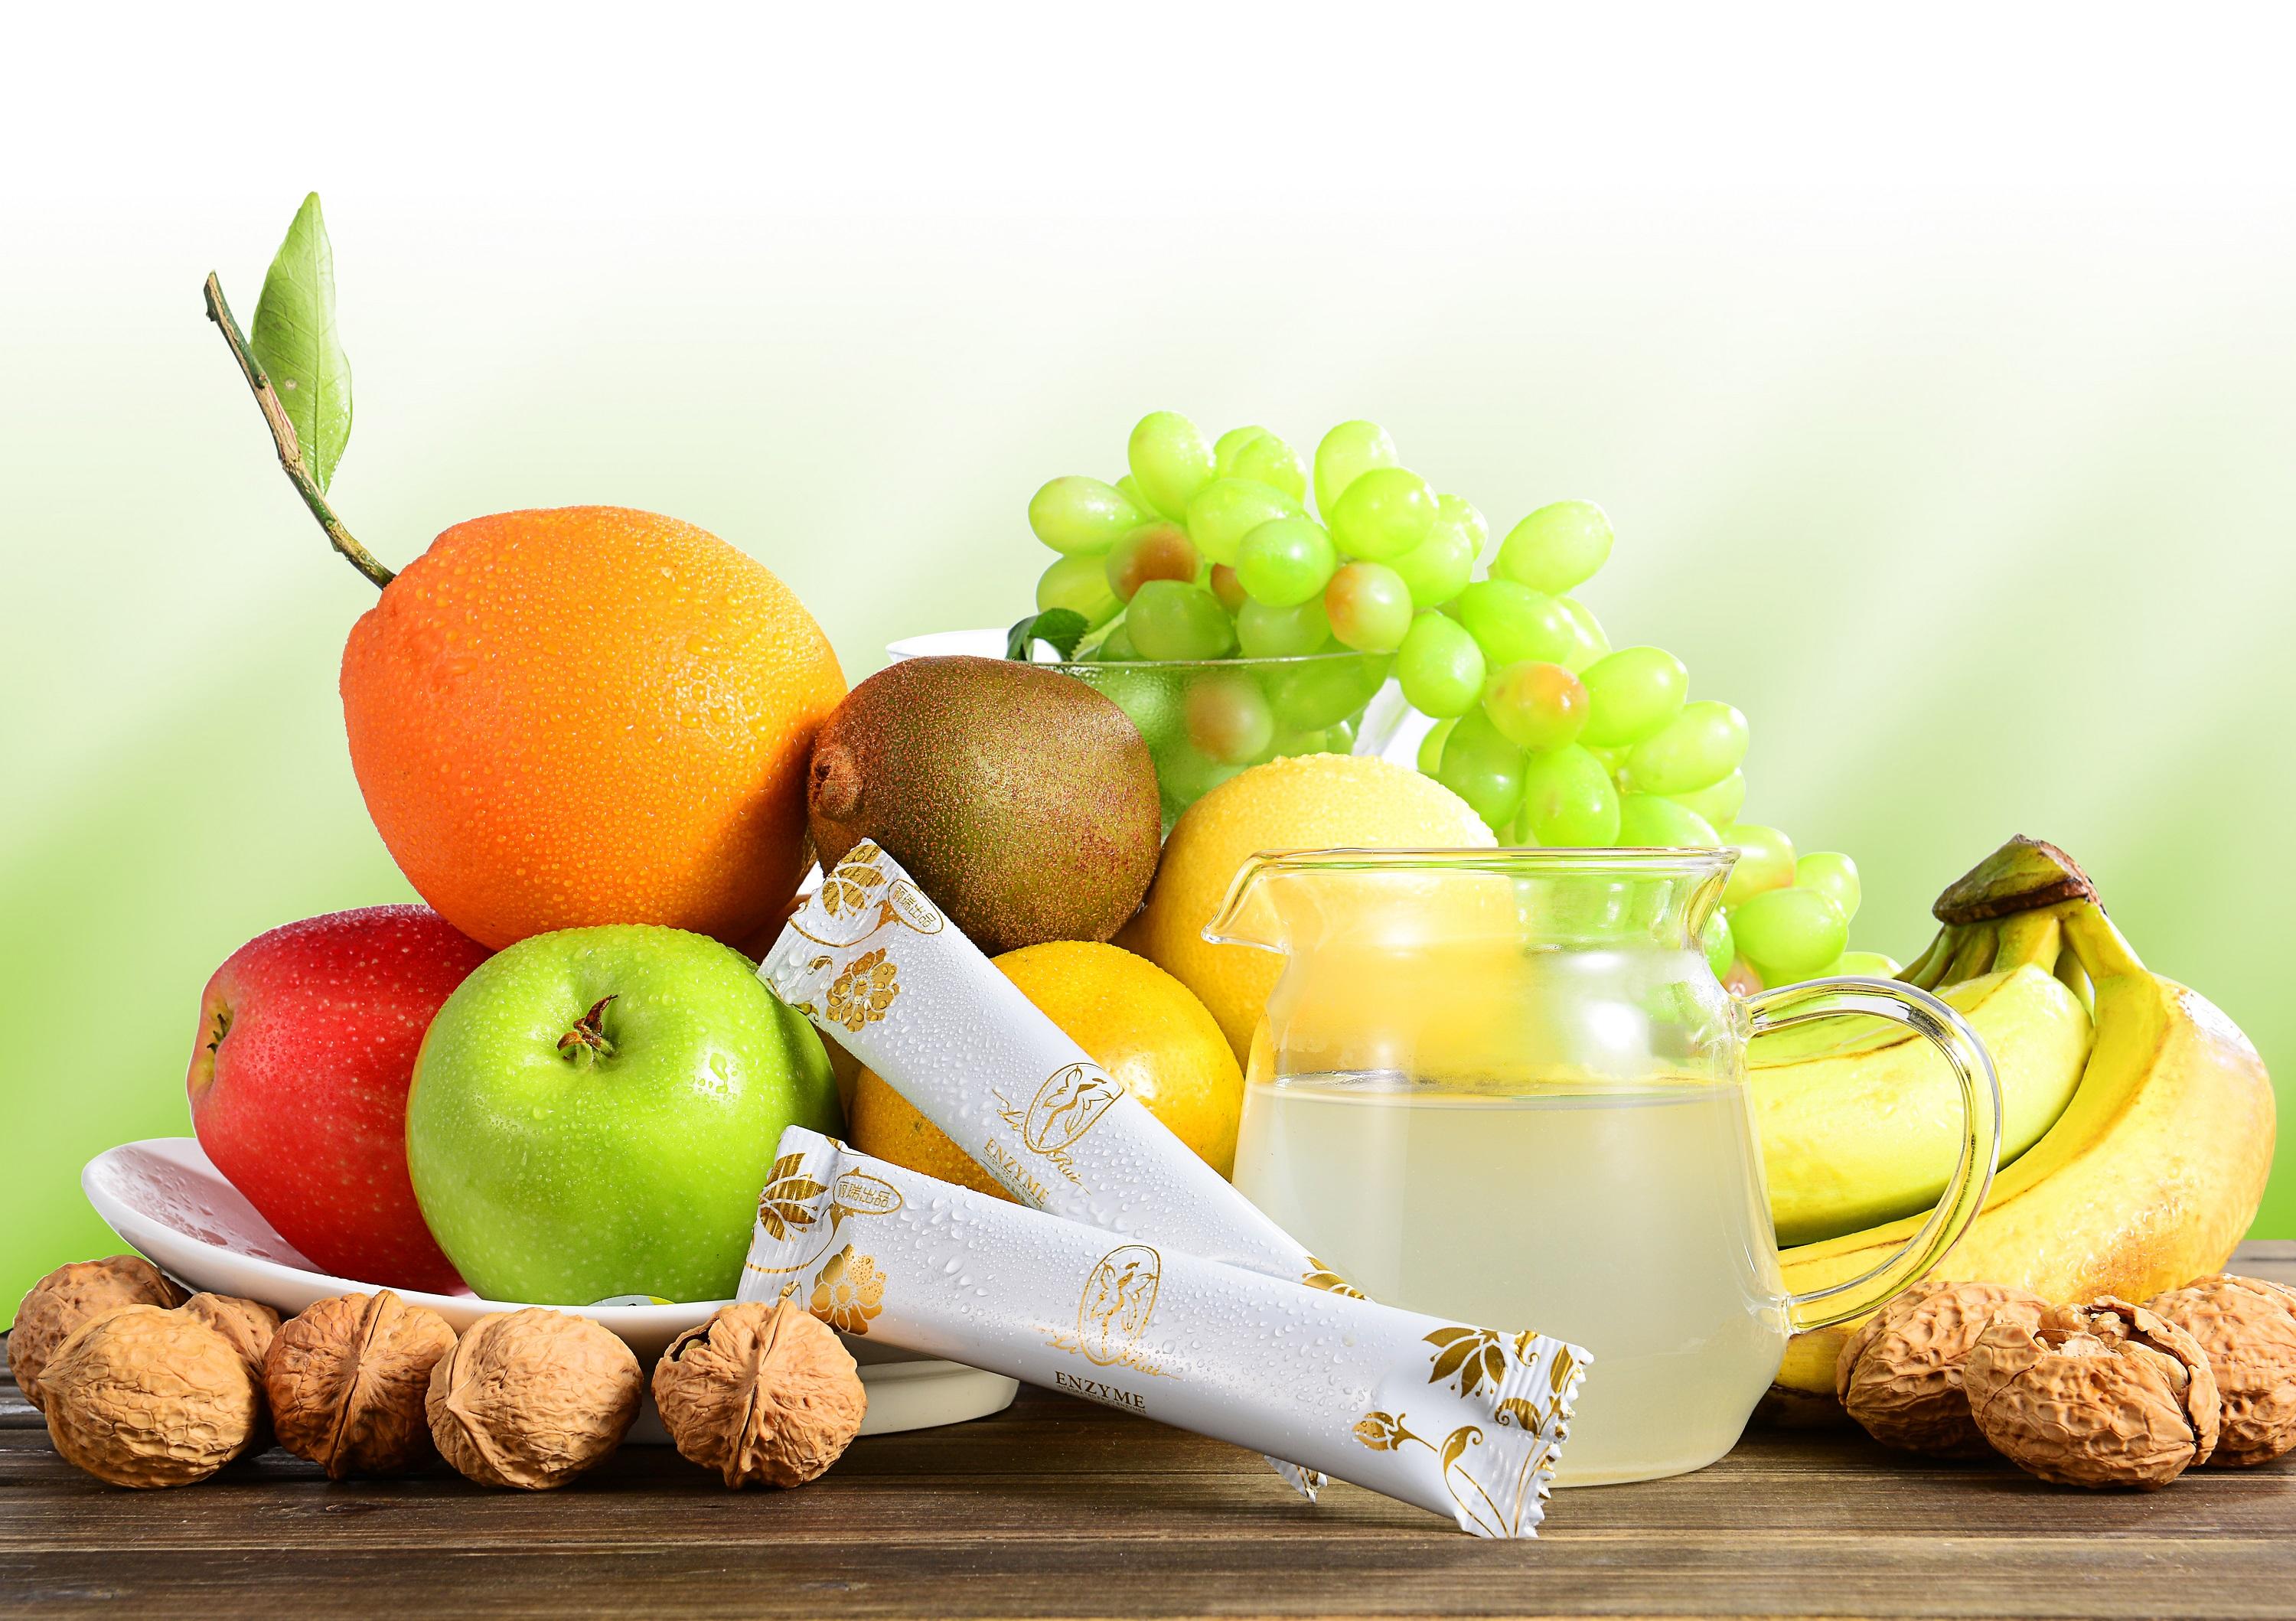 一定要保证吃到一颗健康绿色无污染的水果，才有强健我们的体质。那如何做到水果的干干净净呢？这就不得不说我们的新宠---二维码溯源系统